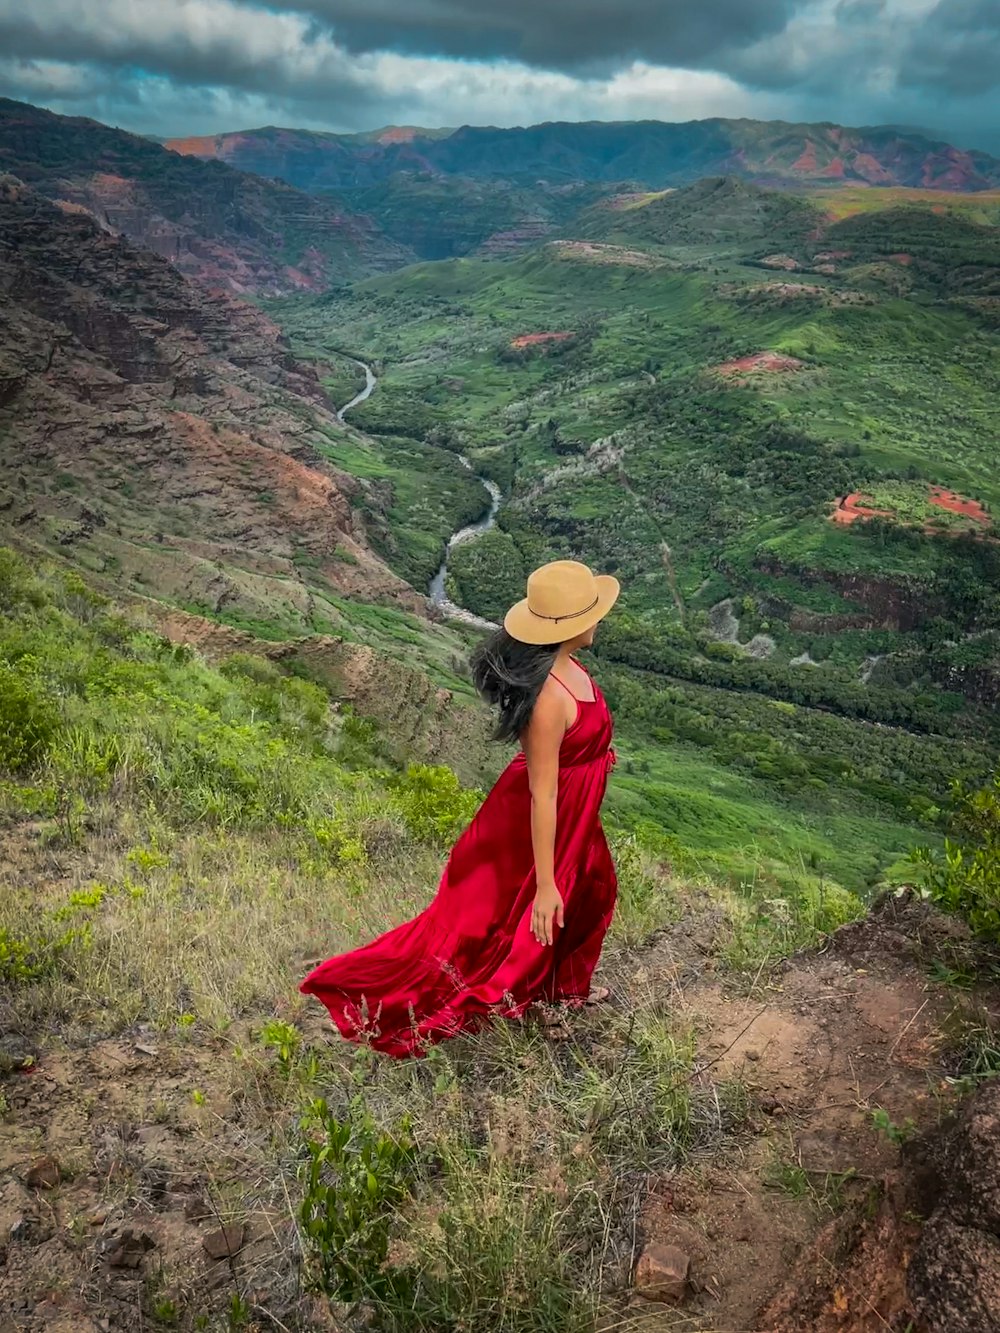 赤いドレスを着て帽子をかぶった女性が丘の上に立っている